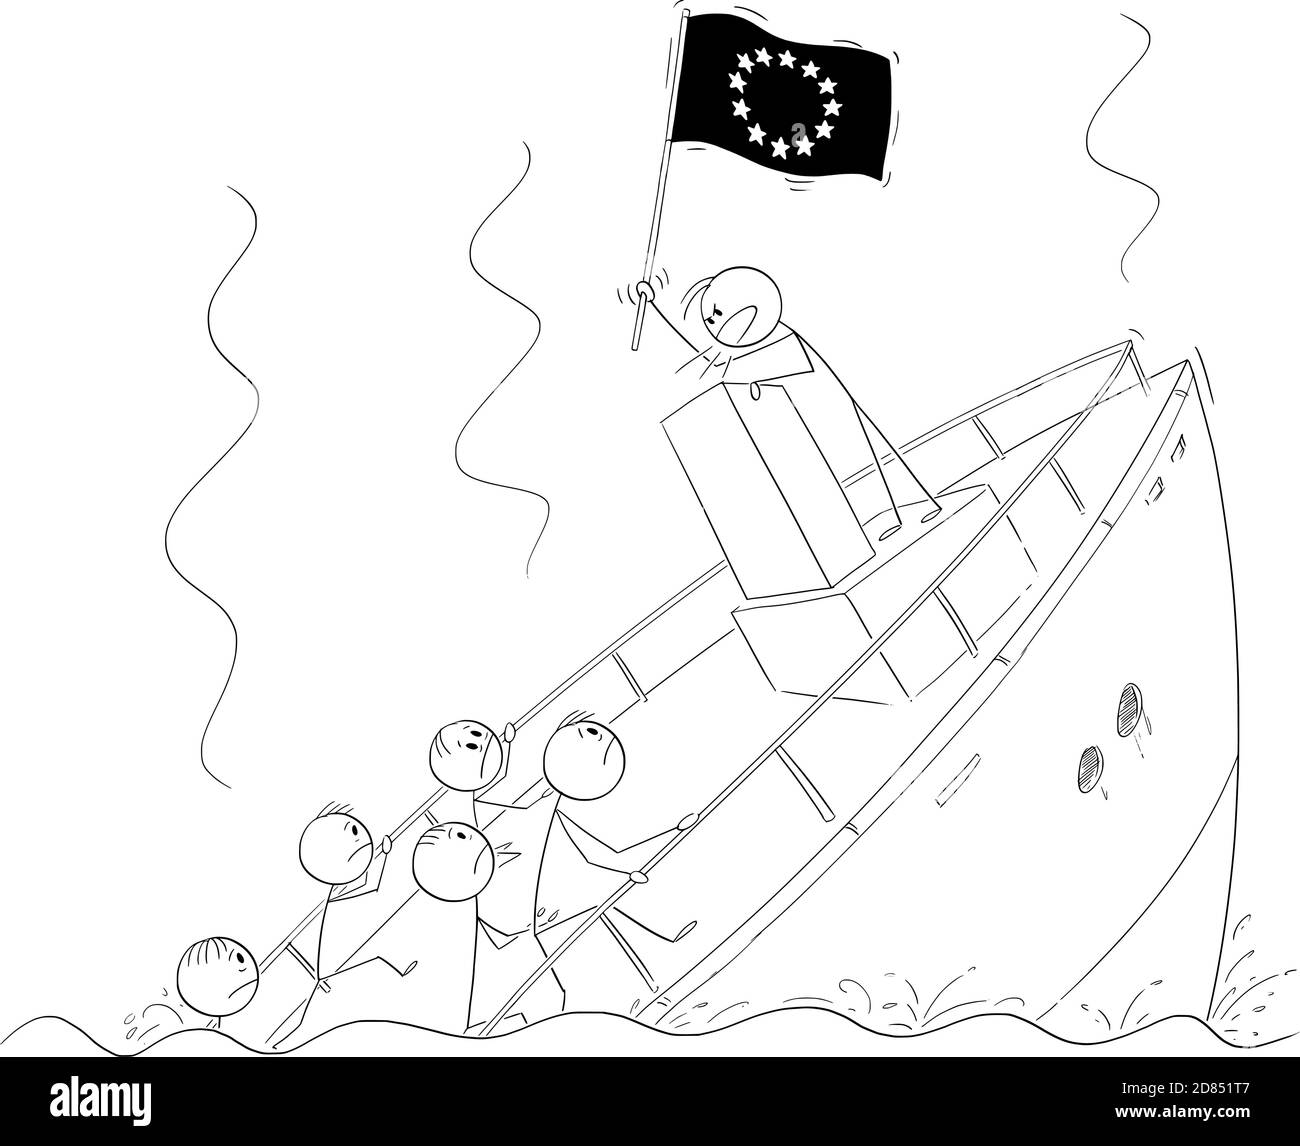 Dessin animé vectoriel en bâton illustration d'un homme politique ou d'un dirigeant tenant le drapeau de l'UE ou de l'Union européenne et parlant ou parlant, debout derrière le pupitre pendant le naufrage de navire ignorant la crise et la réalité. Illustration de Vecteur